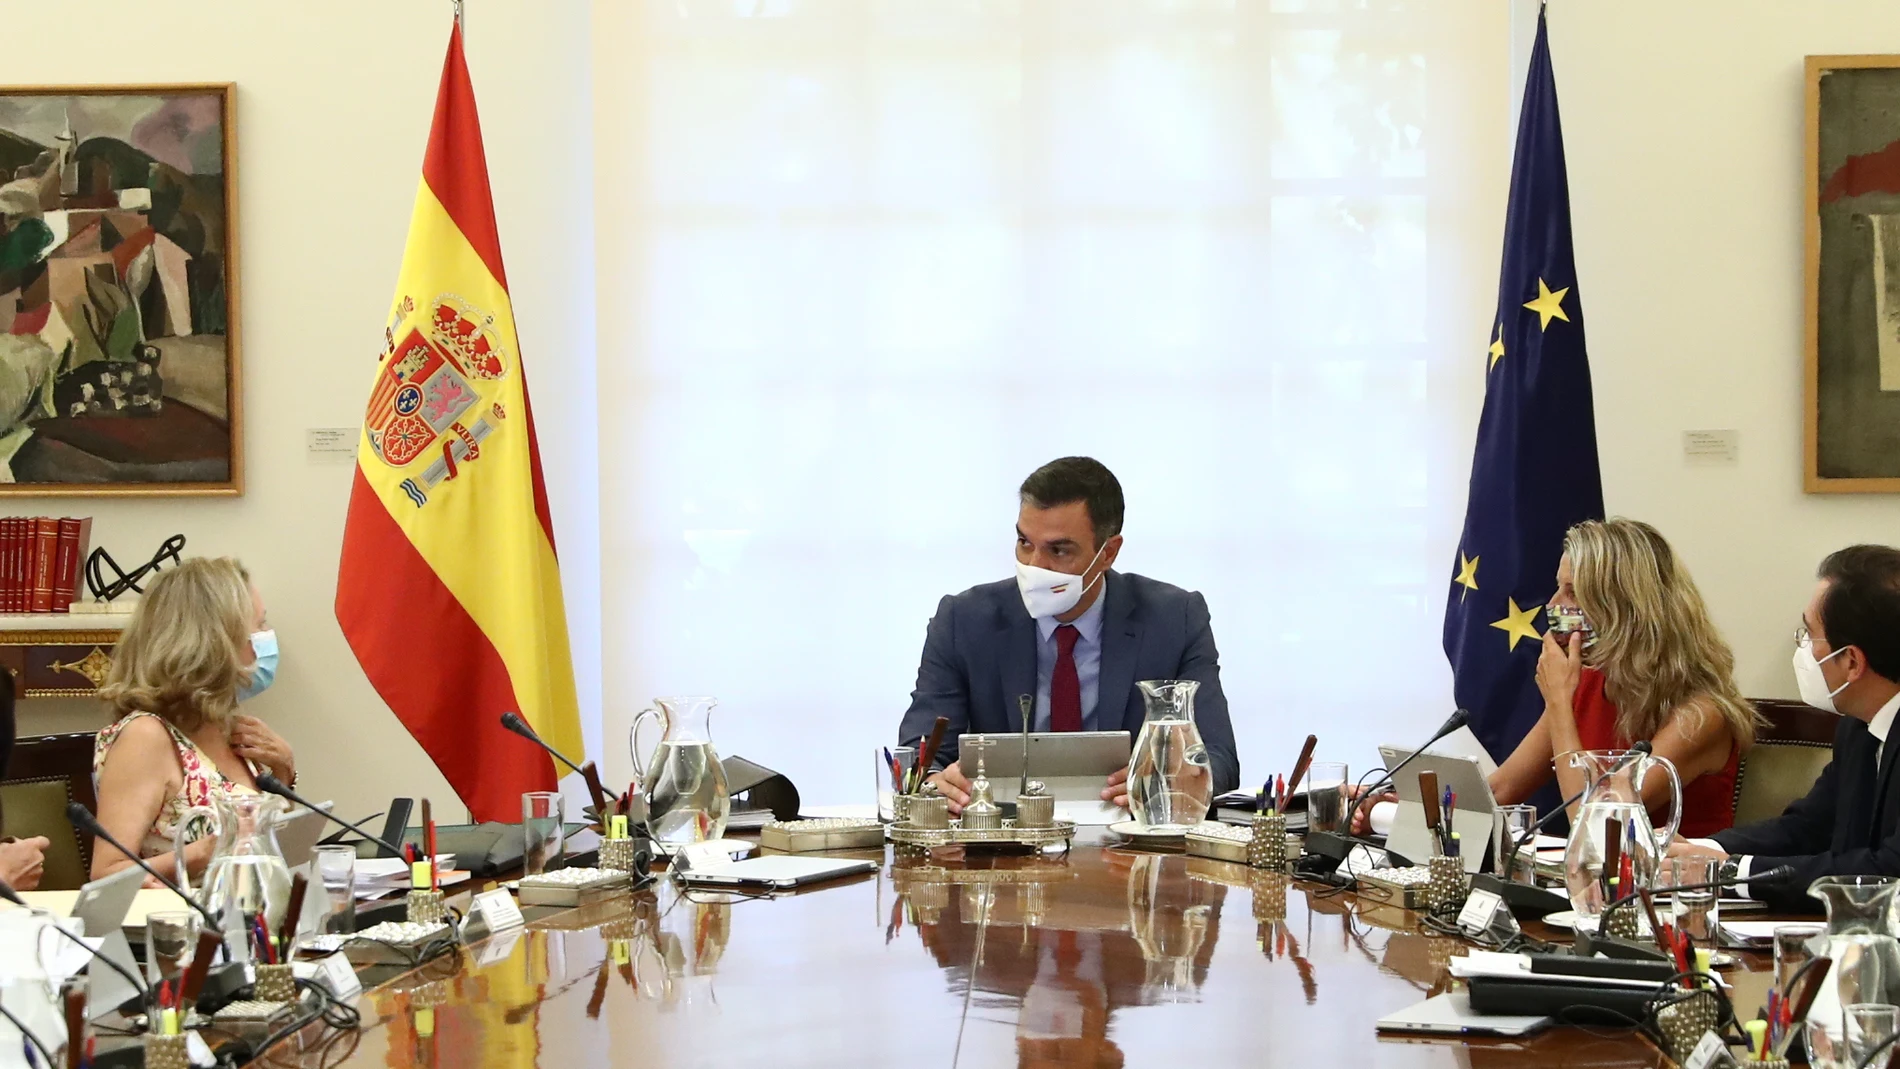 El presidente del Gobierno, Pedro Sánchez, preside el primer Consejo de Ministros tras el parón estival, a 24 de agosto de 2021